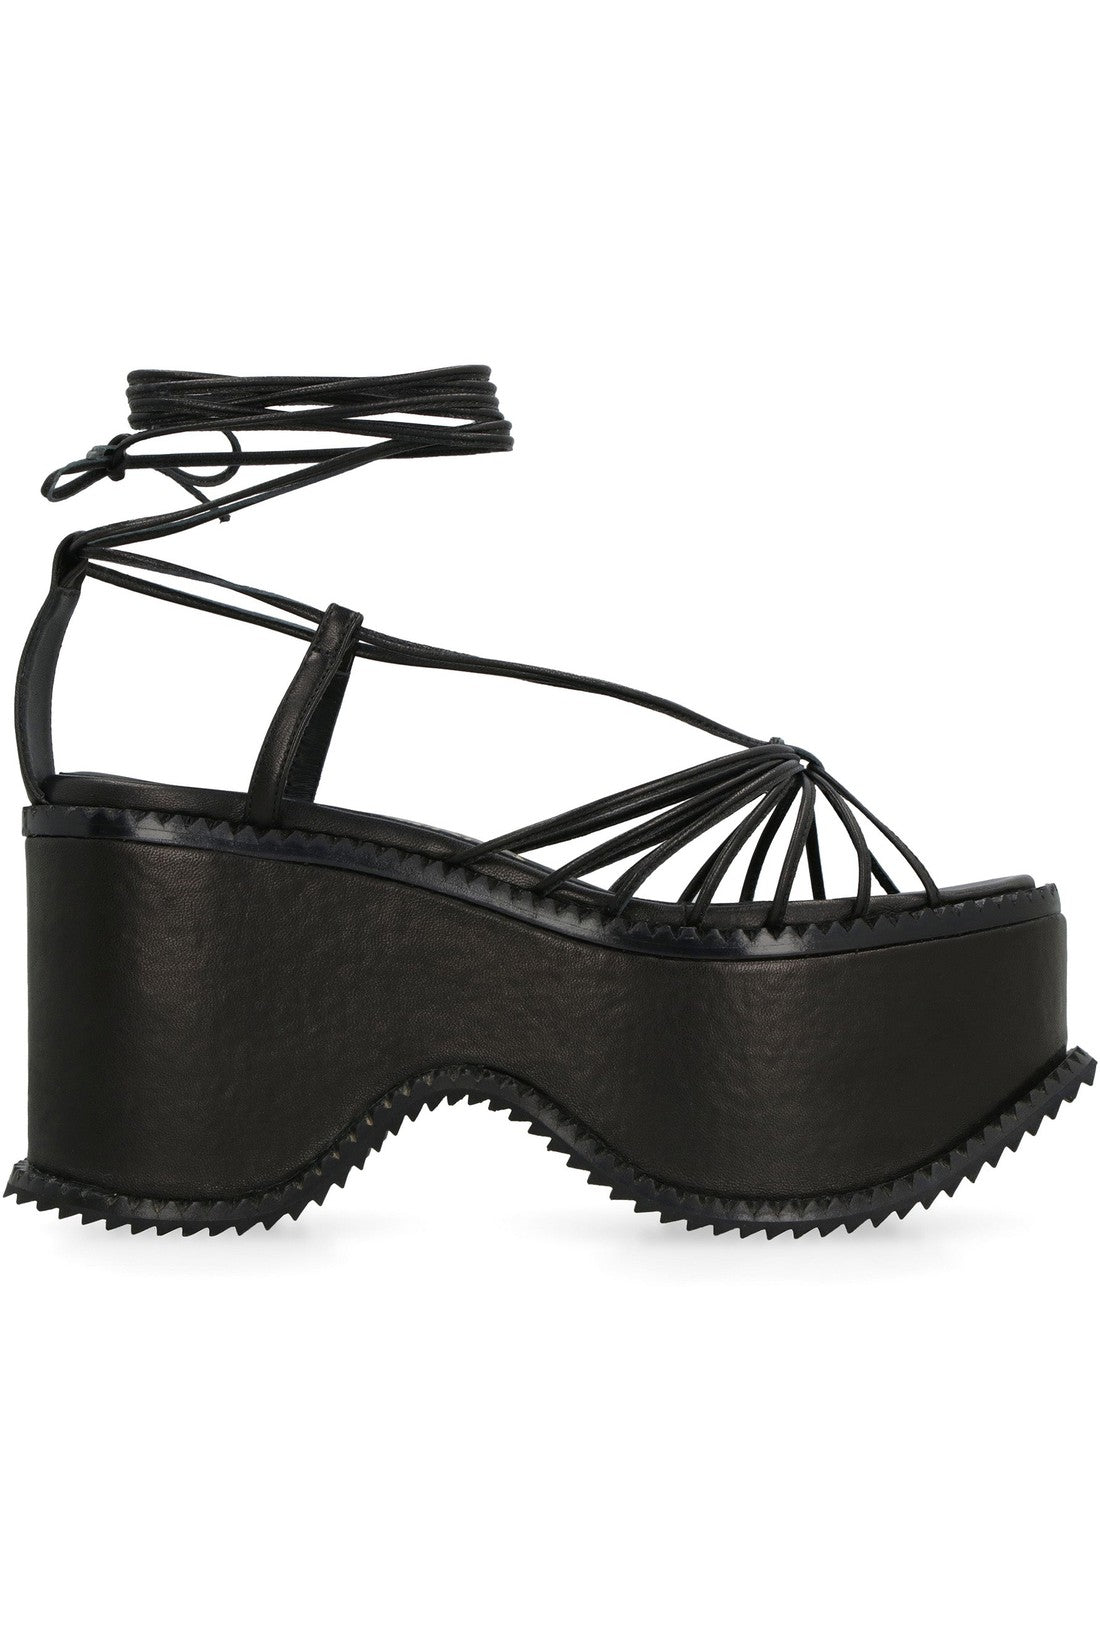 Vivienne Westwood-OUTLET-SALE-Leather platform sandals-ARCHIVIST